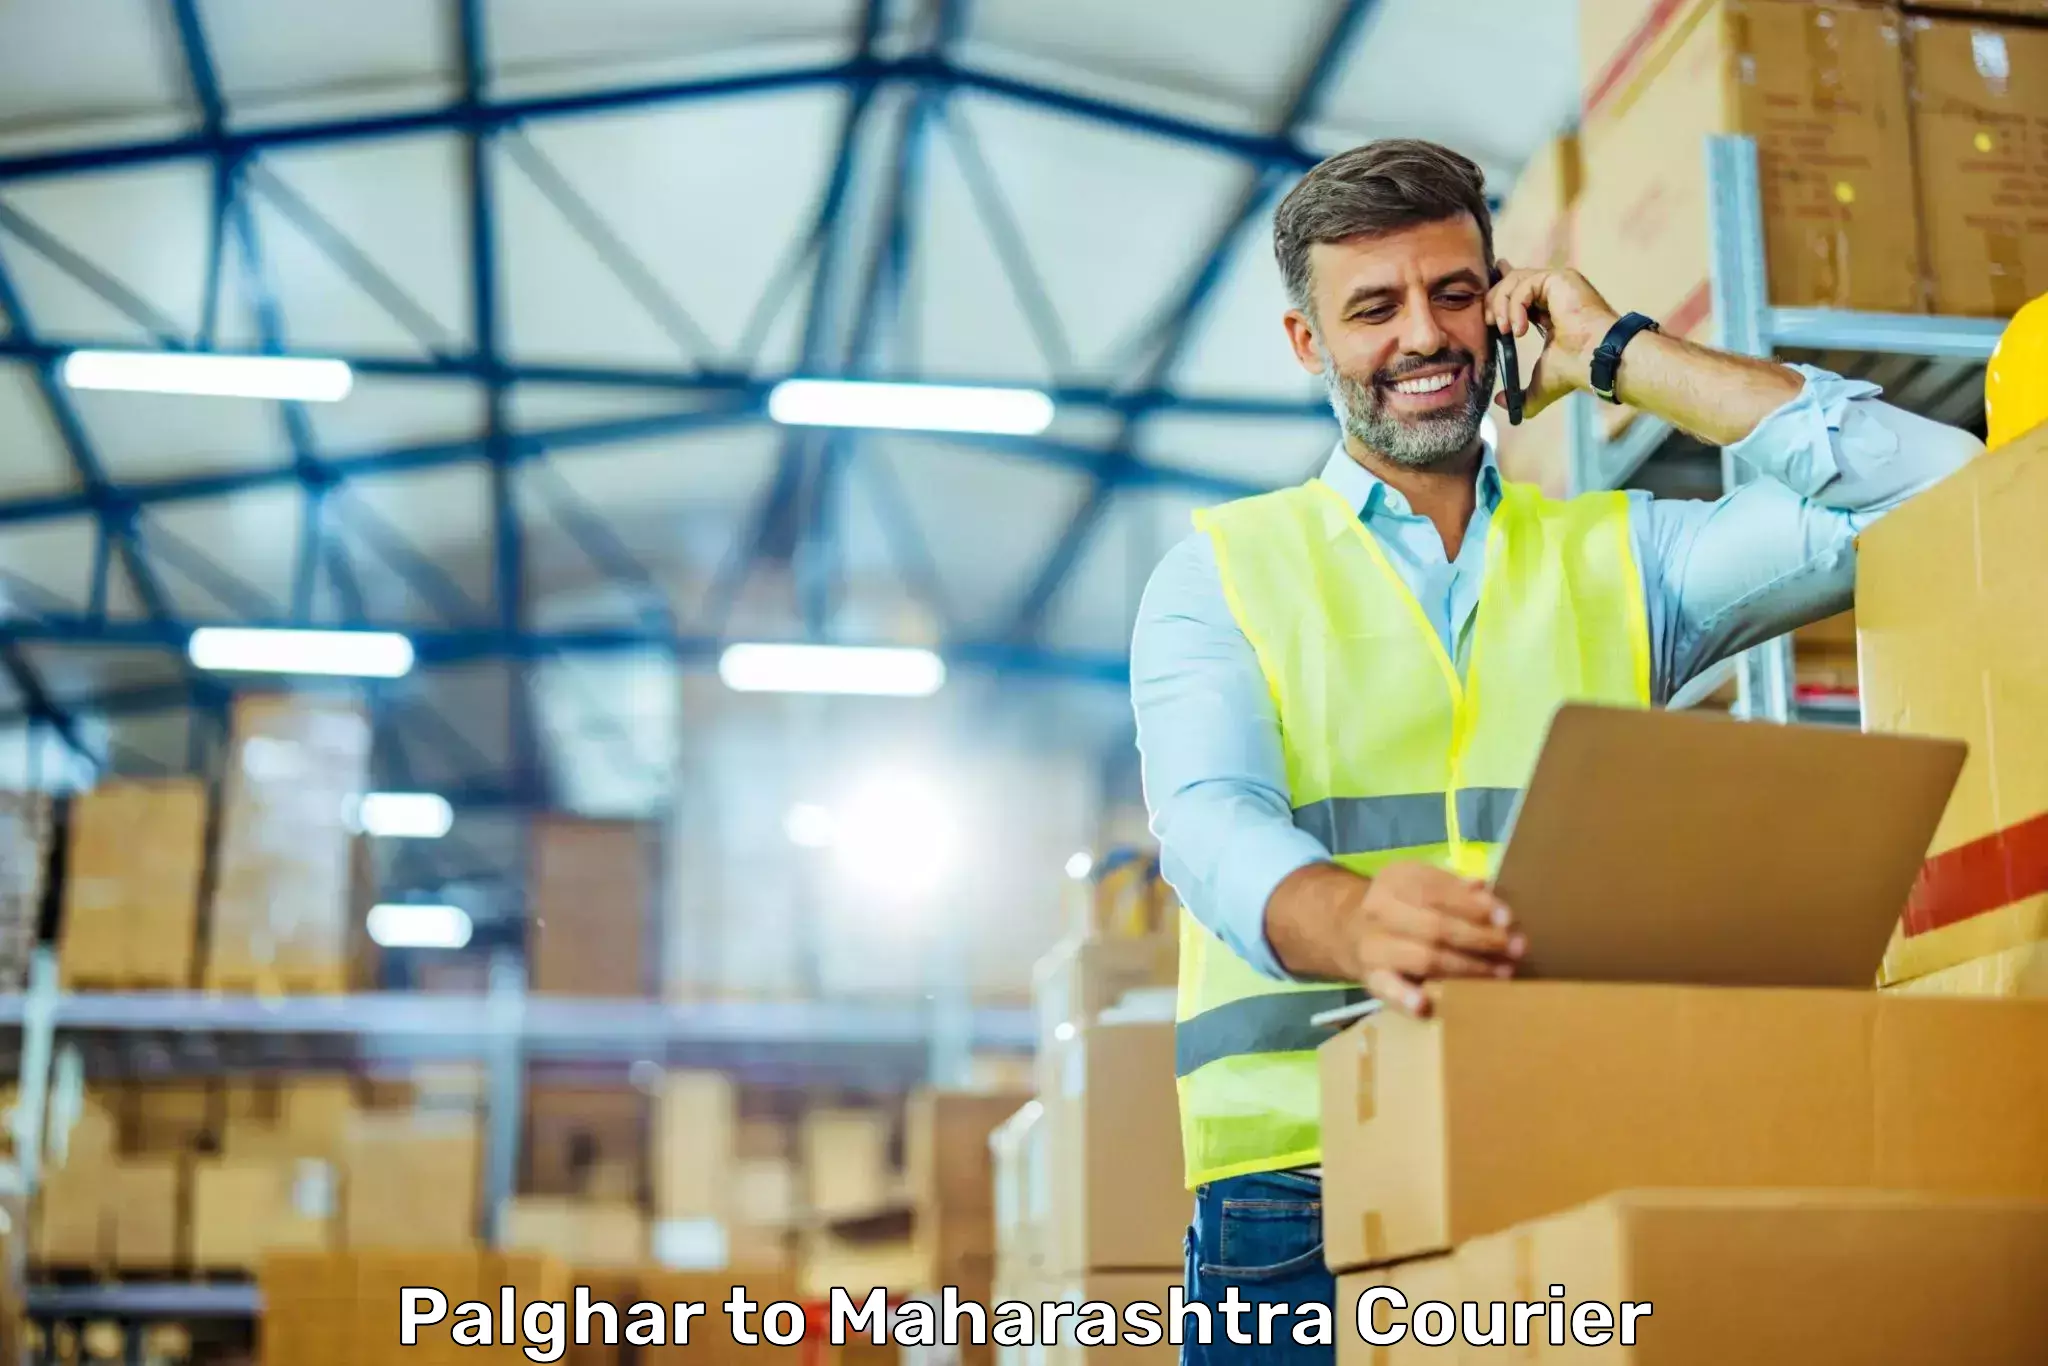 Expedited shipping methods Palghar to Maharashtra